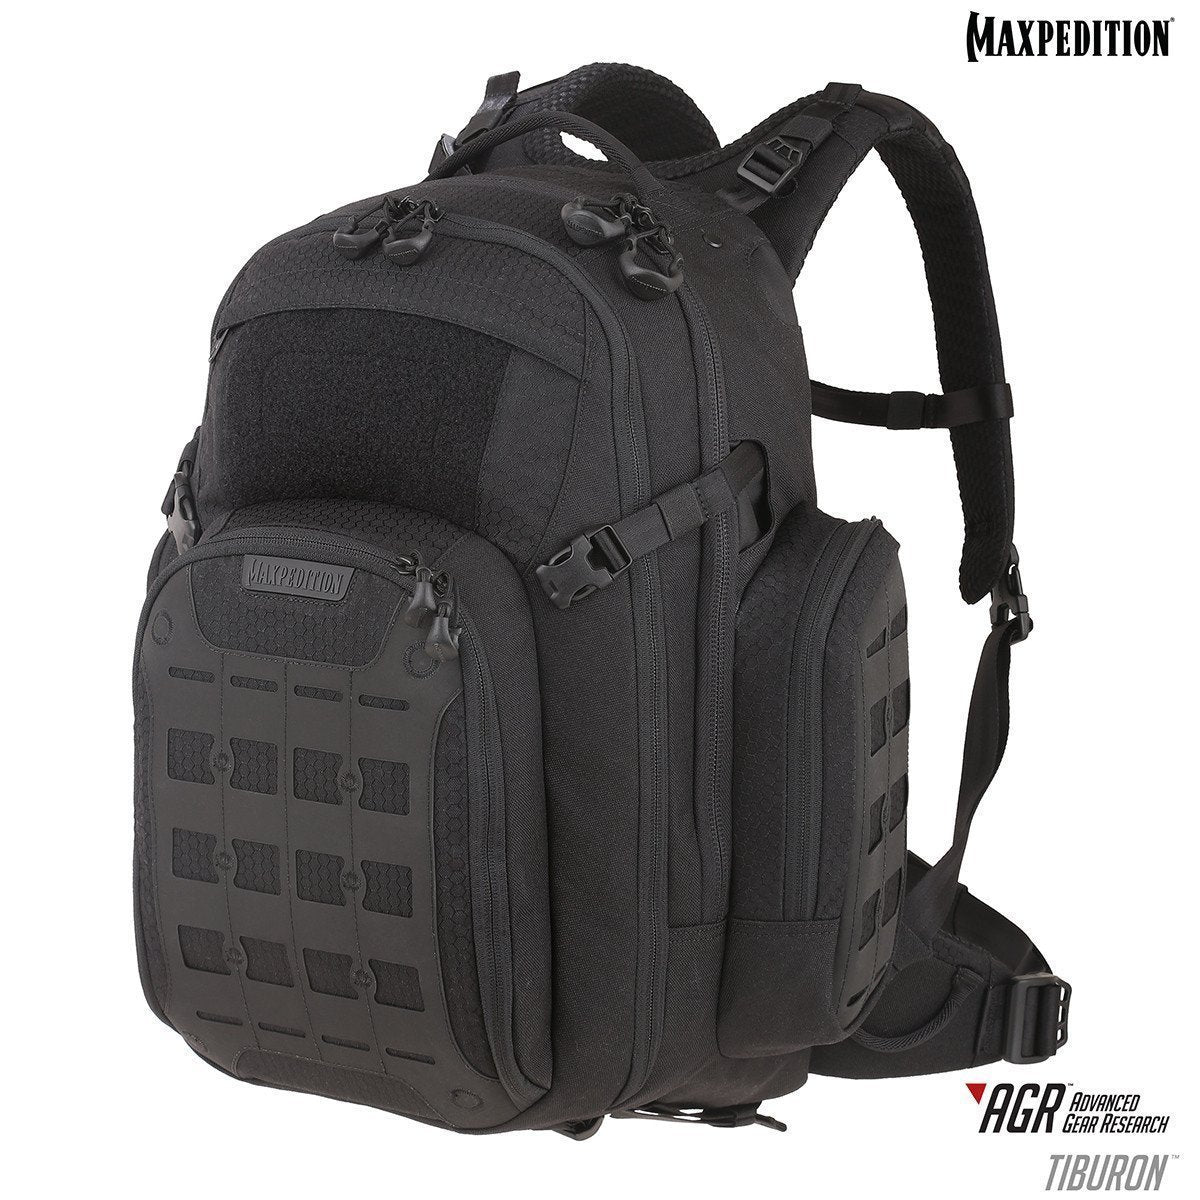 Maxpedition Tiburon Backpack 34L Backpacks Maxpedition Gray Tactical Gear Supplier Tactical Distributors Australia